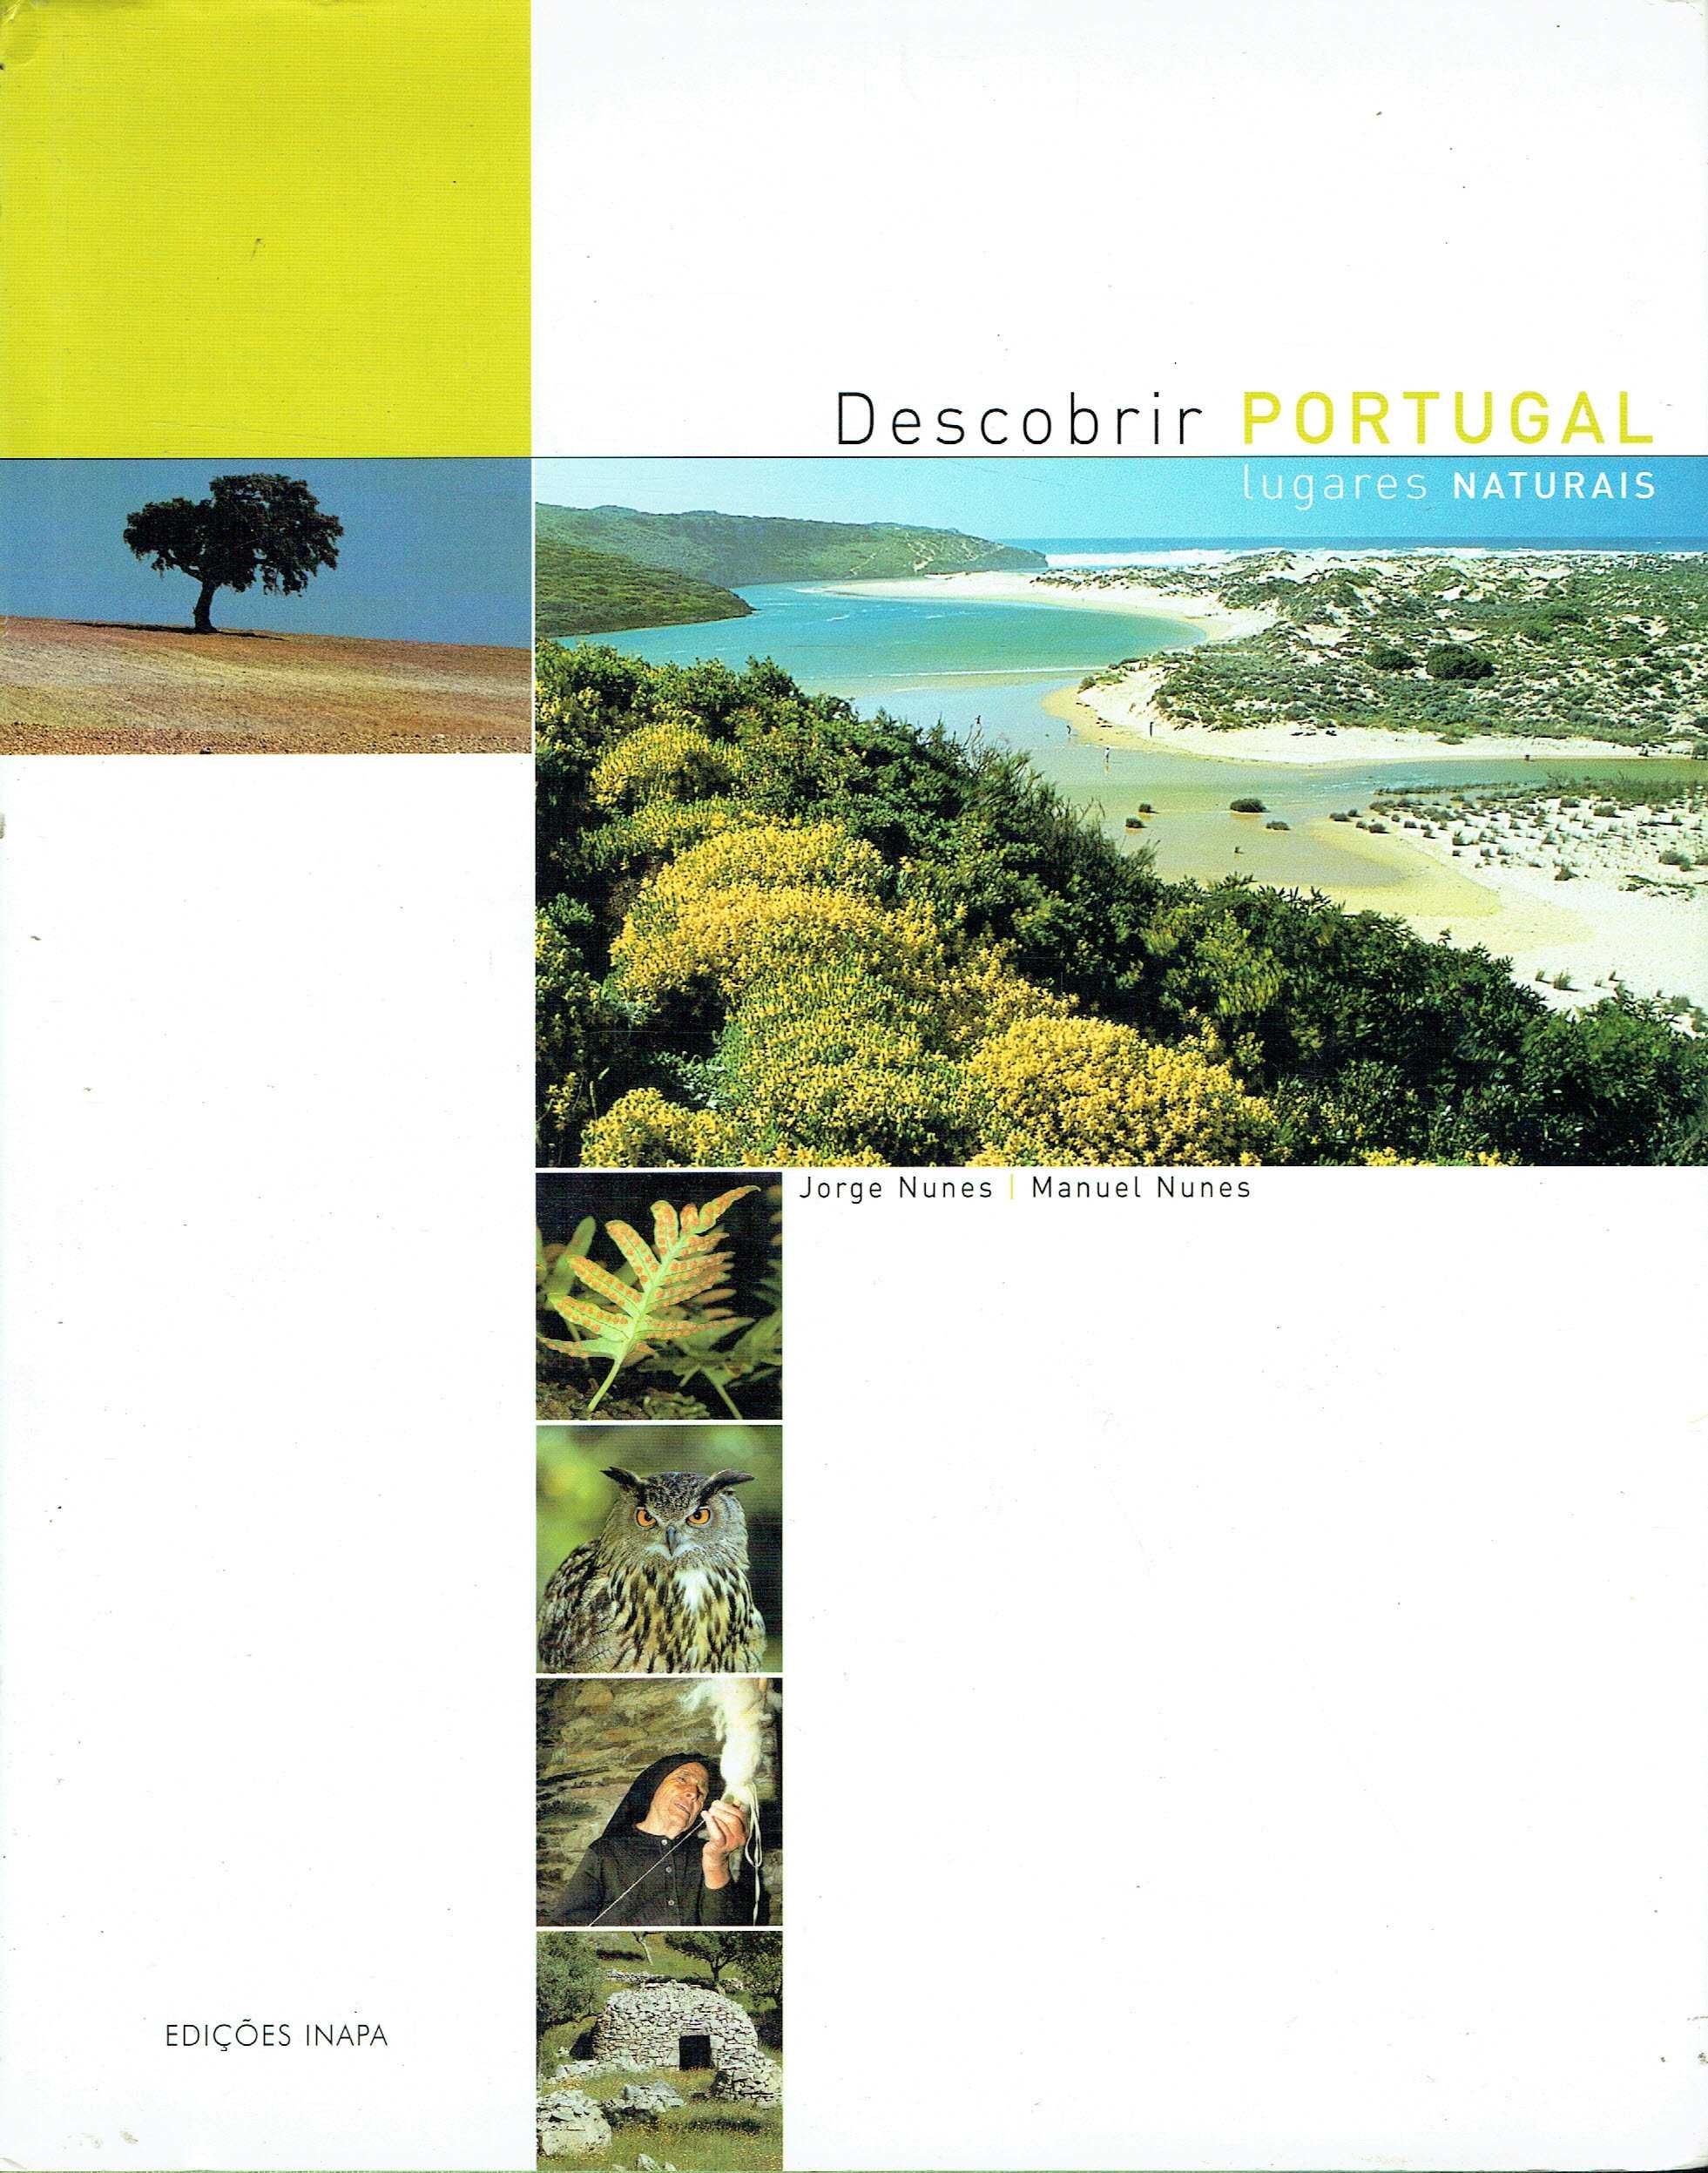 15025

Descobrir Portugal - Lugares Naturais
de Jorge Nunes